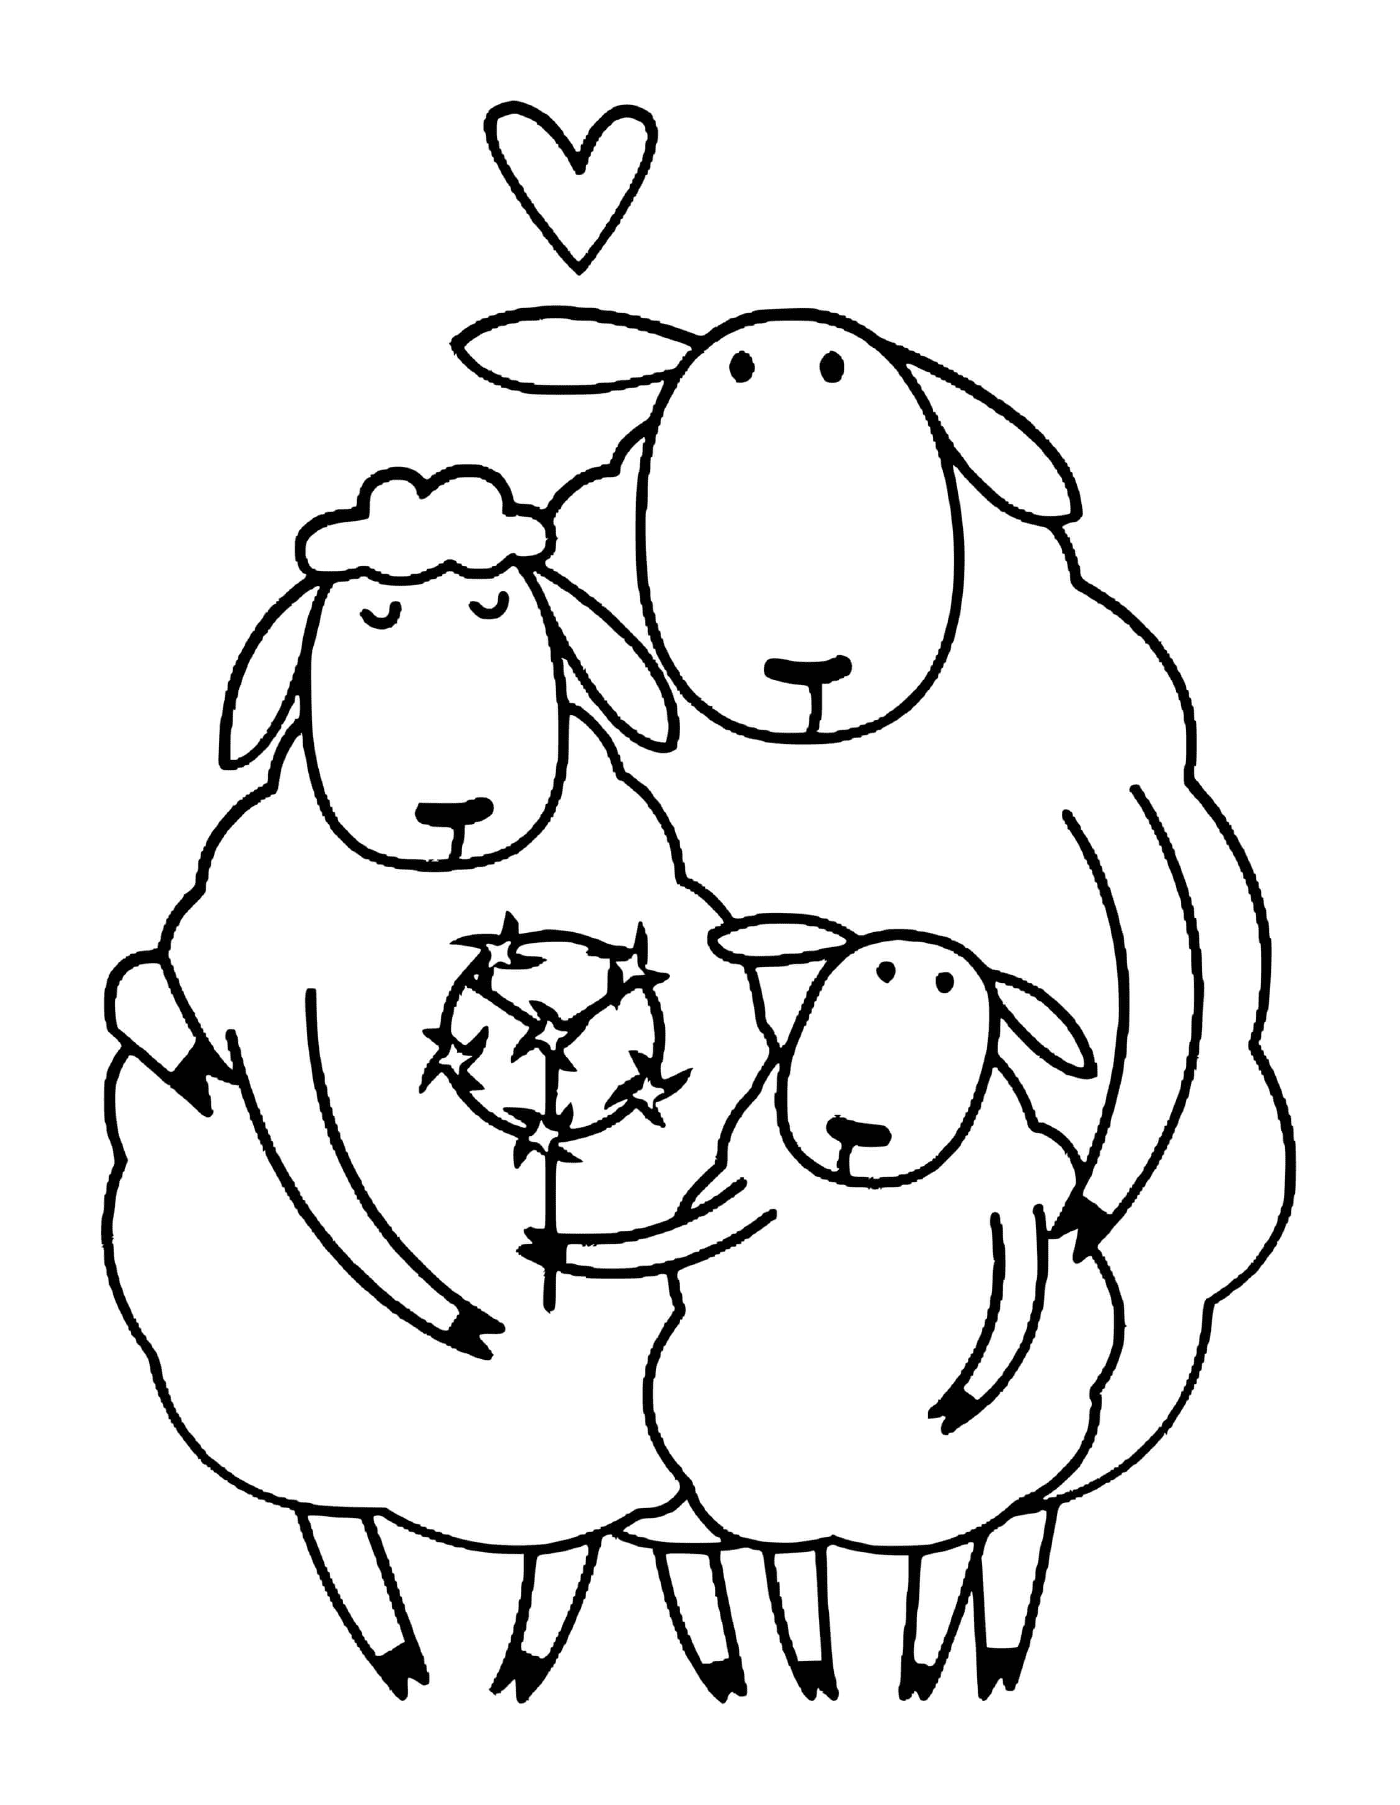  一头羊和两只羊羔 